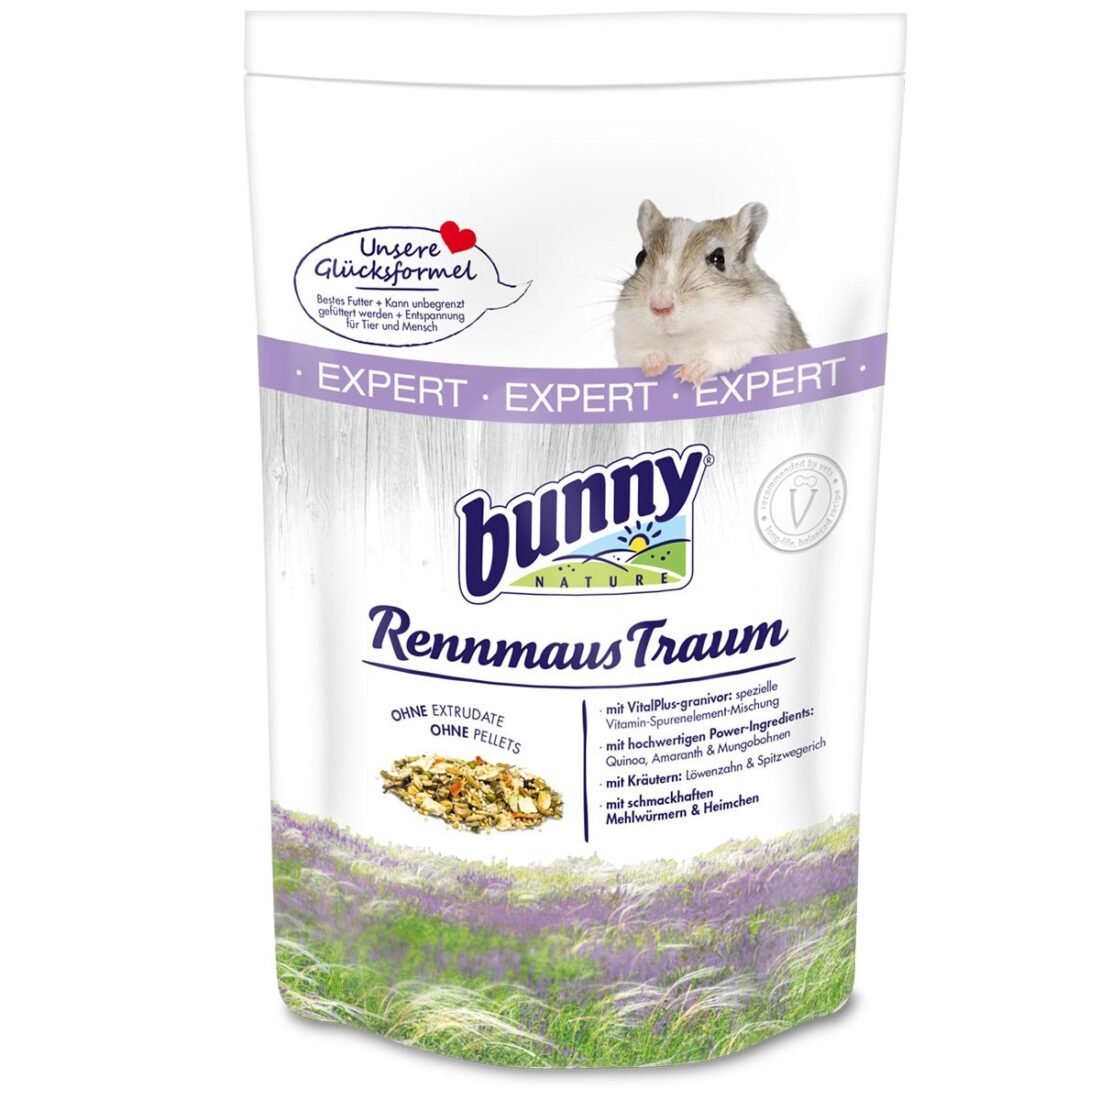 Bunny Nature RennmausTraum EXPERT 5×